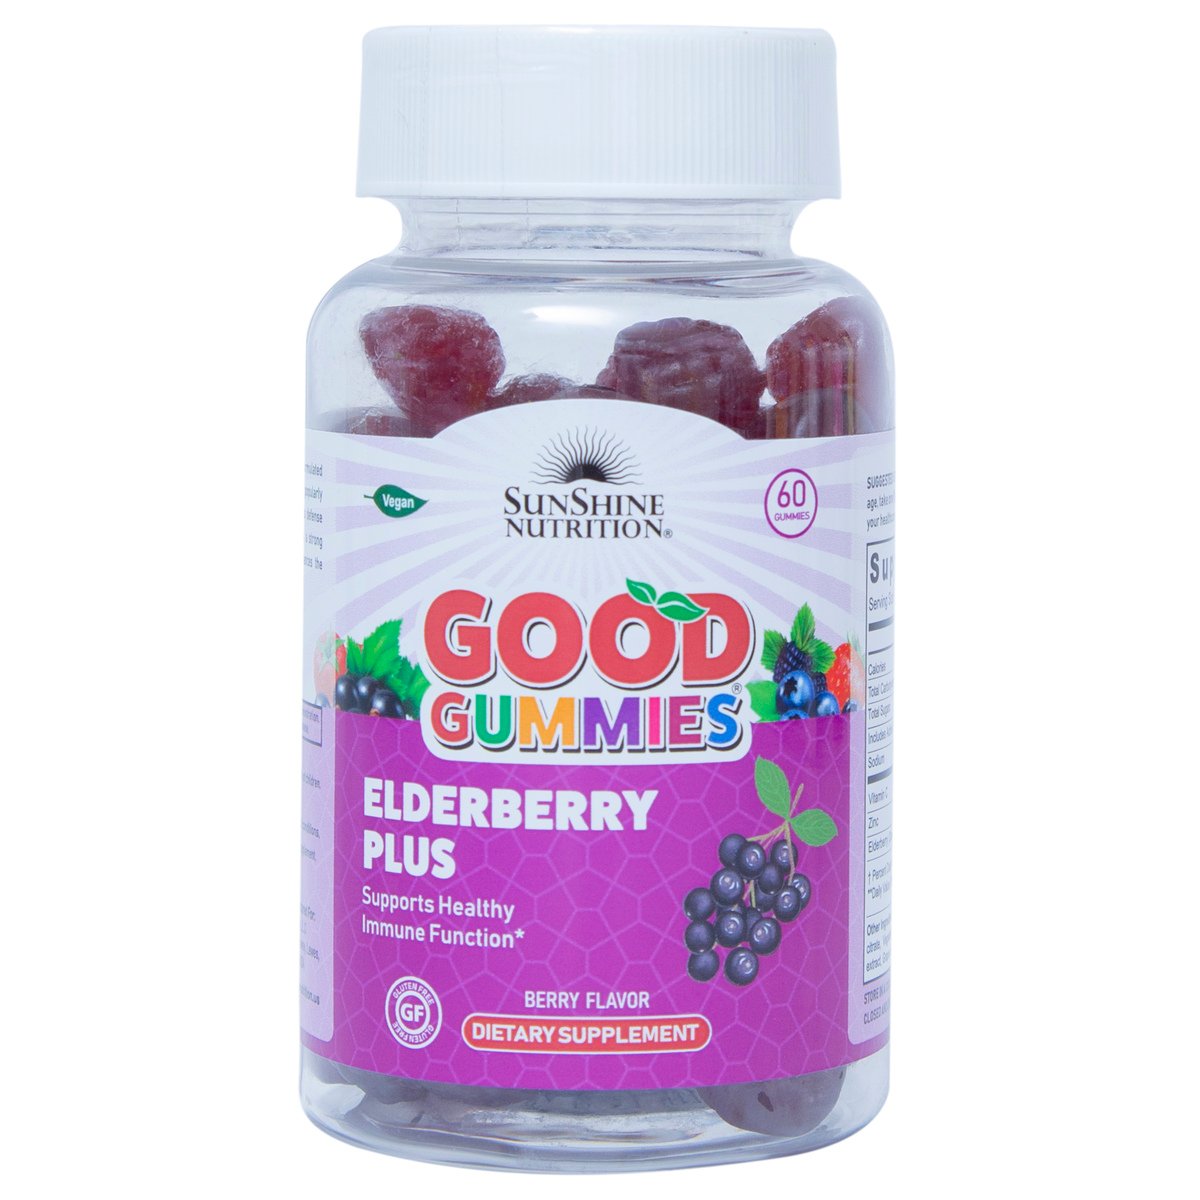 Sunshine Nutrition Elderberry Plus Good Gummies 60 pcs